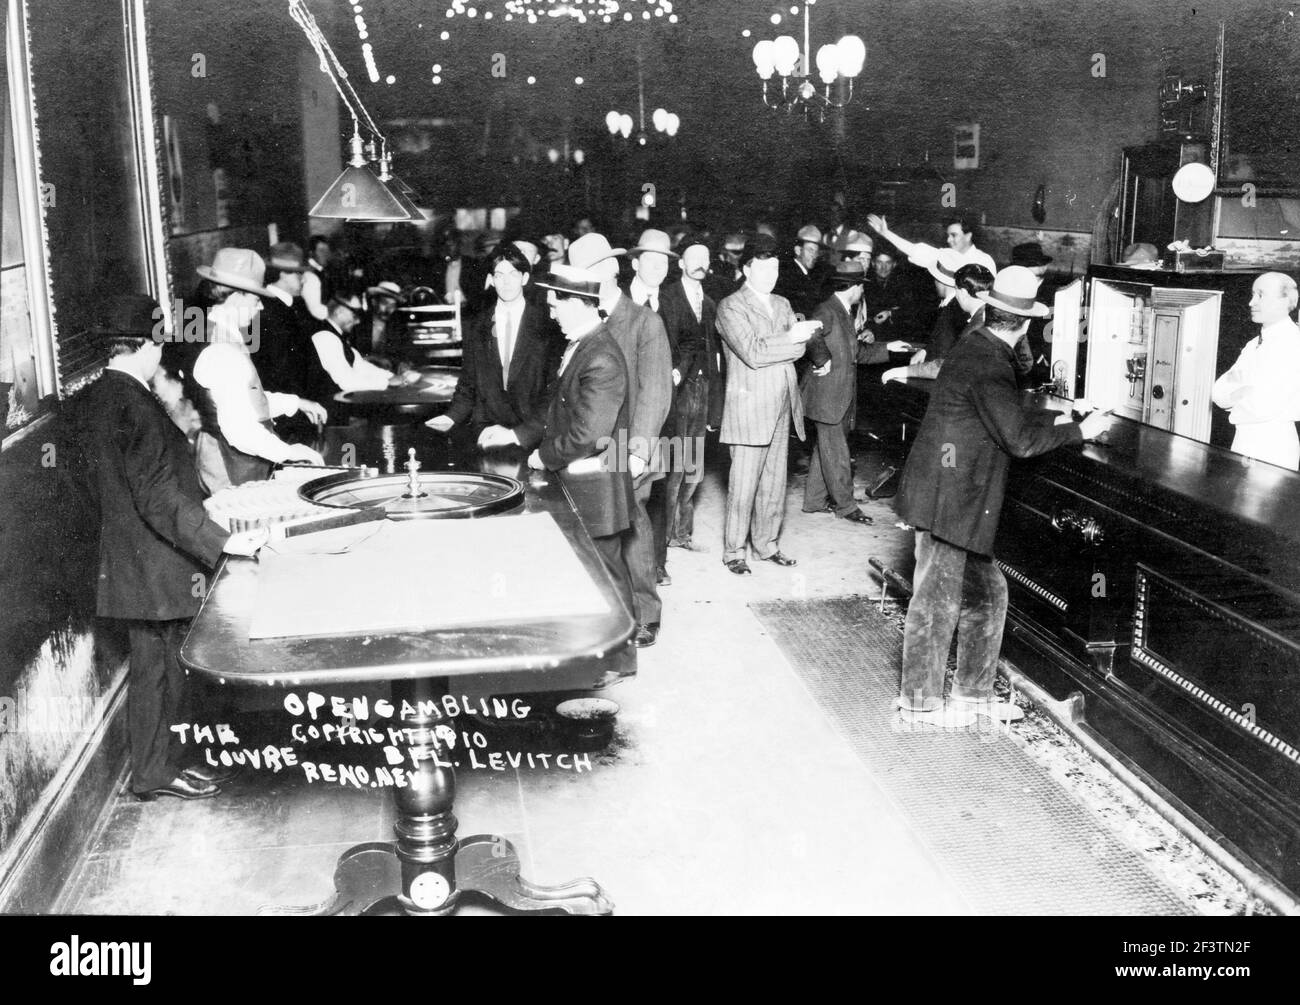 Gioco d'azzardo aperto, il Louvre, Reno, Nevada - Vista in gioco d'azzardo casinò, roulette tavolo e bar in primo piano, 1910 Foto Stock